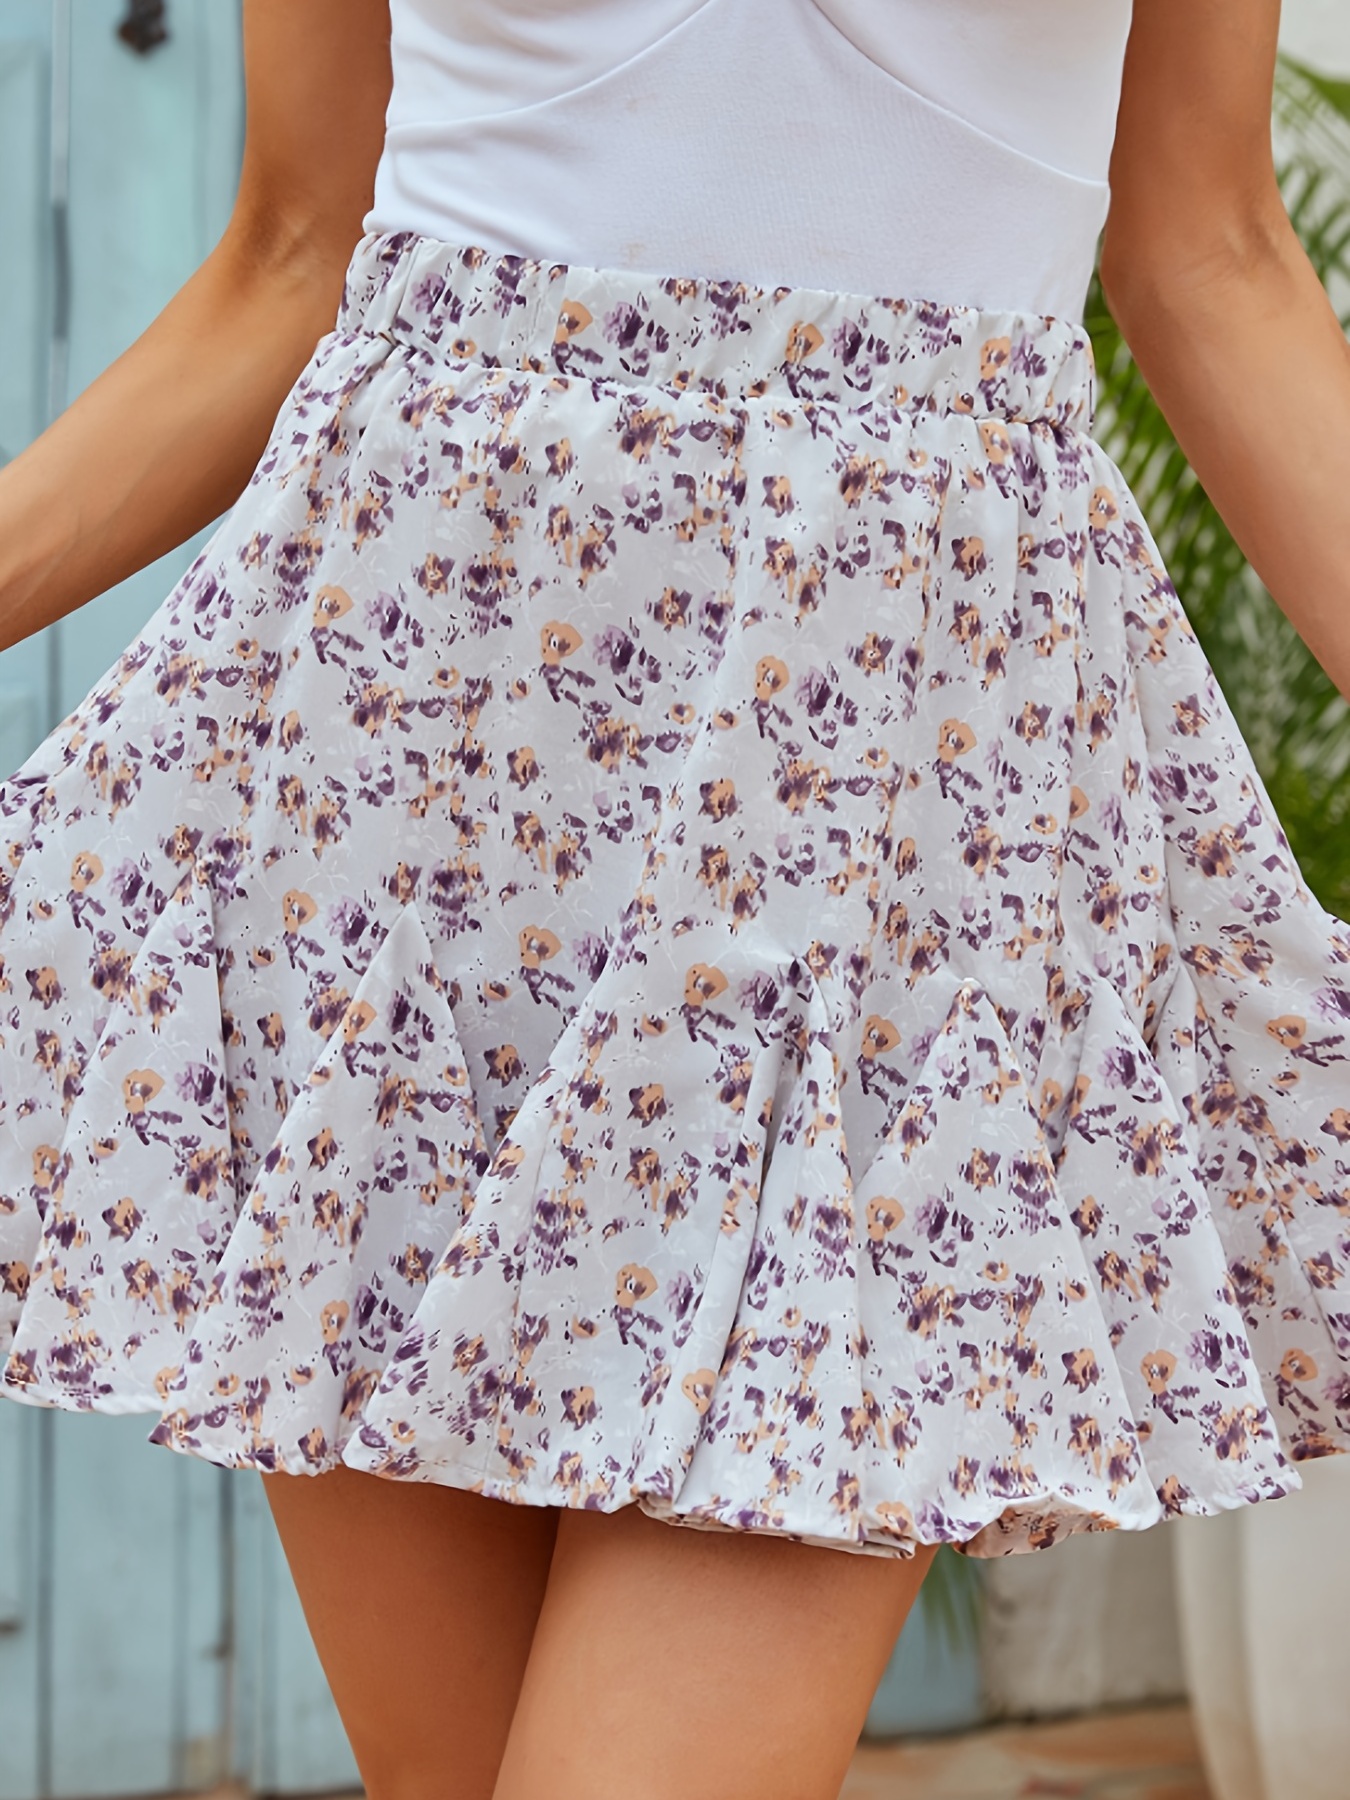 Women's Skirt Short Front and Long Back Printed Irregular Skirt In Summer